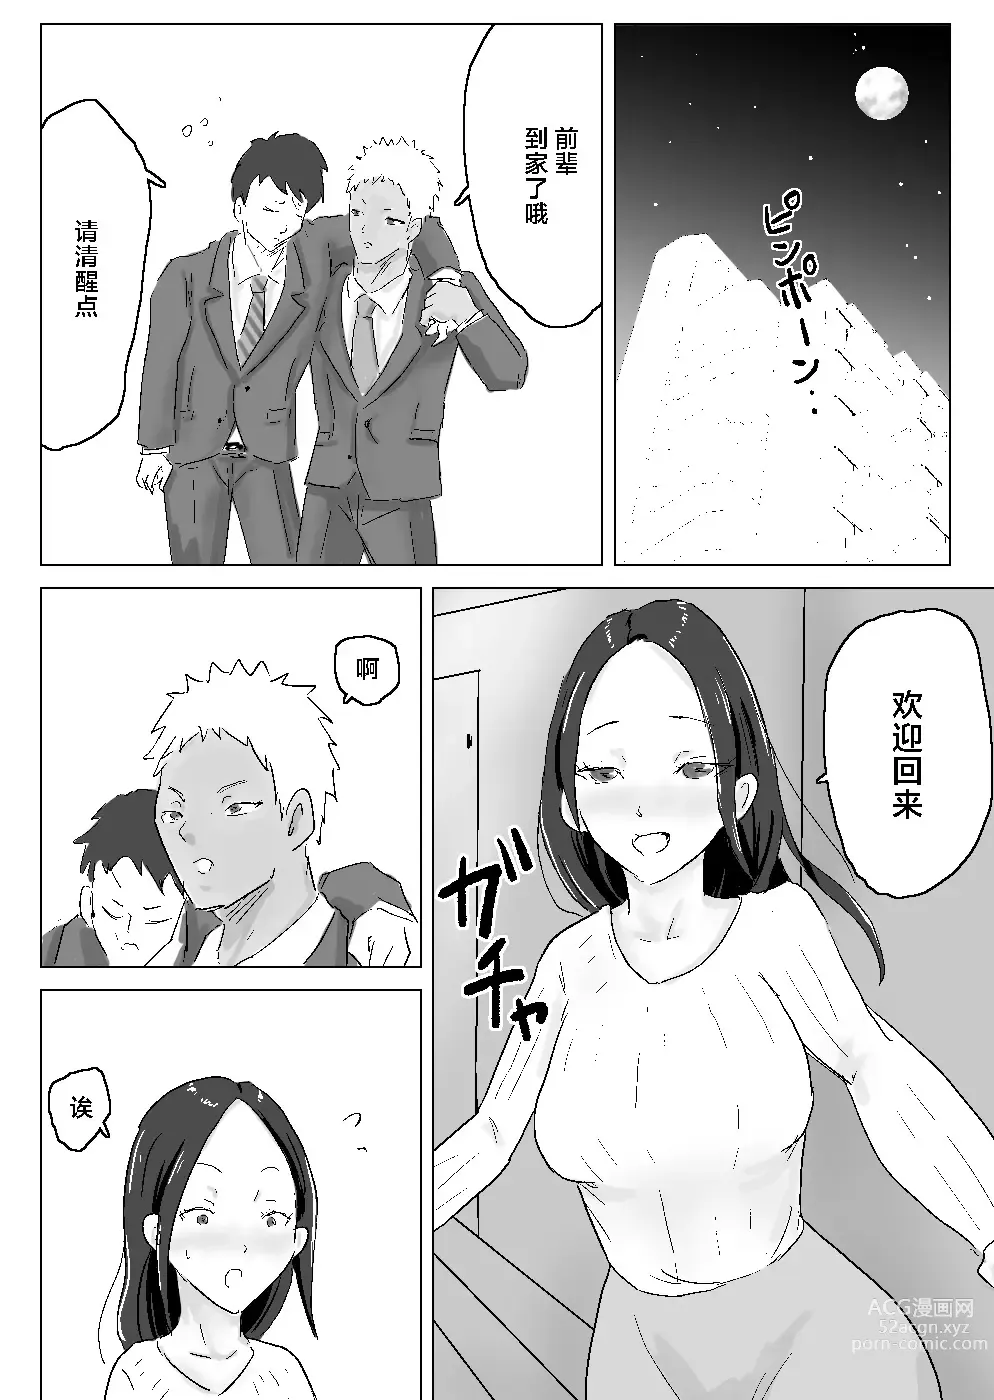 Page 3 of doujinshi 适合黑长直的人妻被轻佻的前男友睡跑了